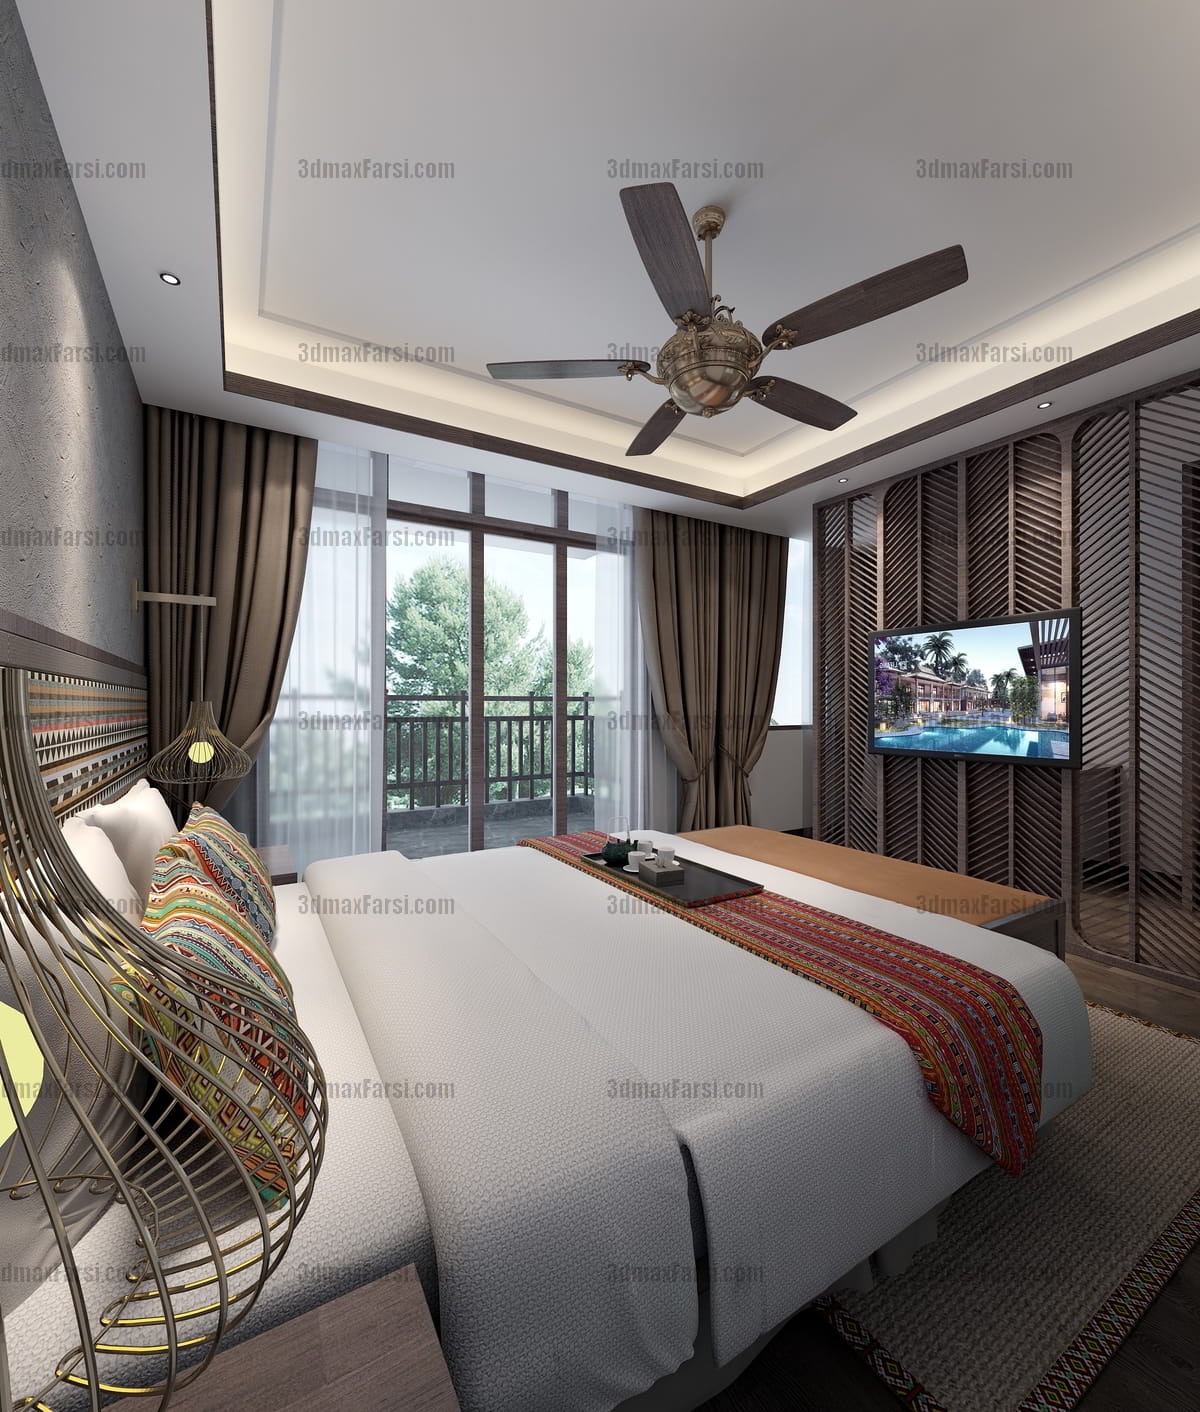 46 3d hotel room interior